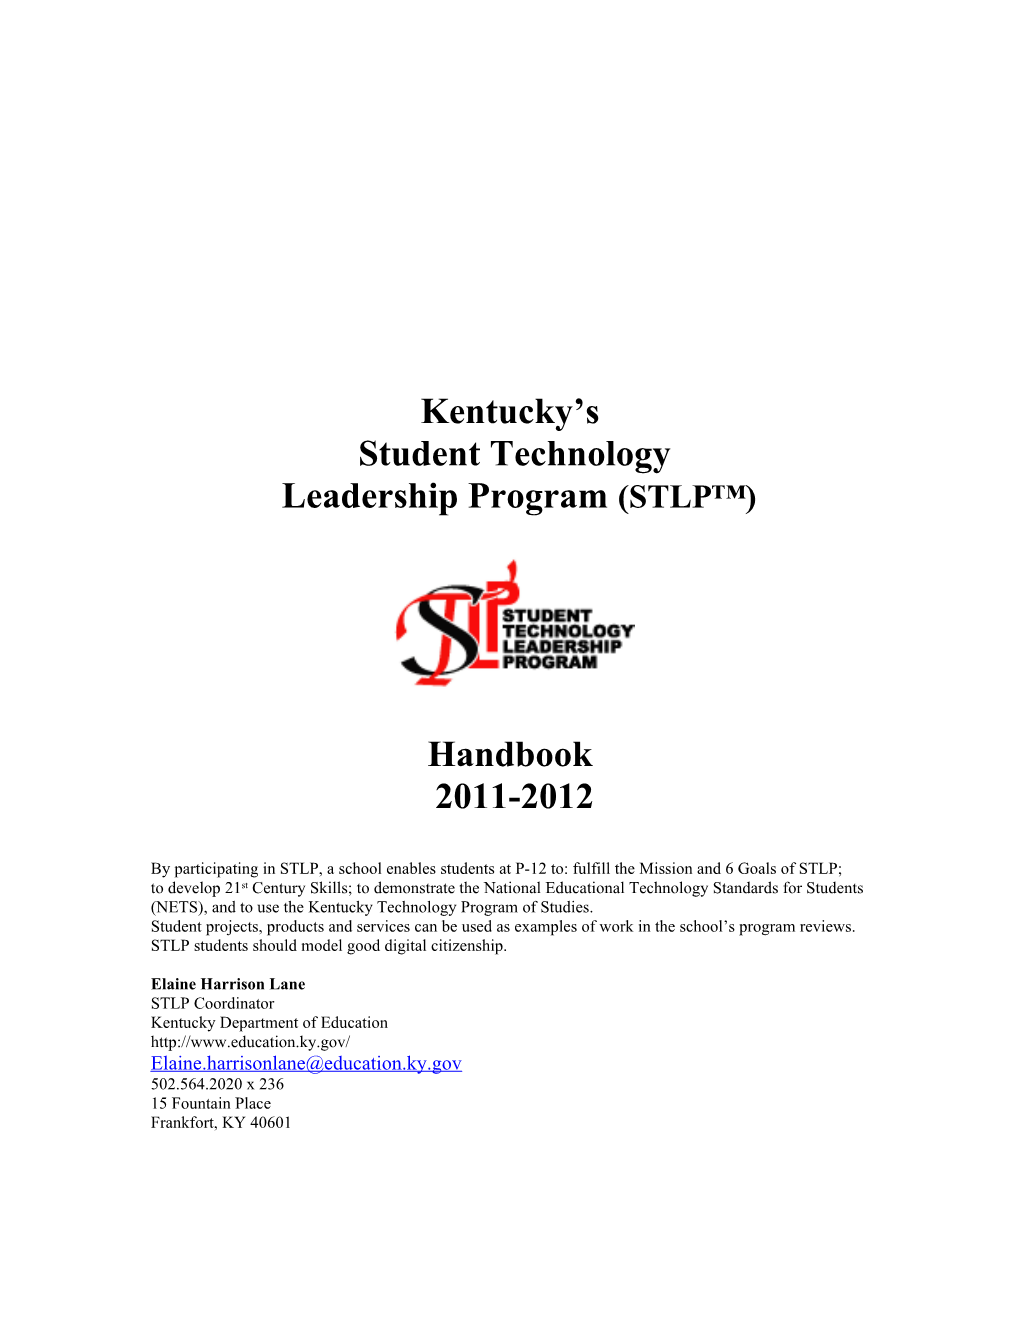 Kentucky S STLP Handbook 2005-2006